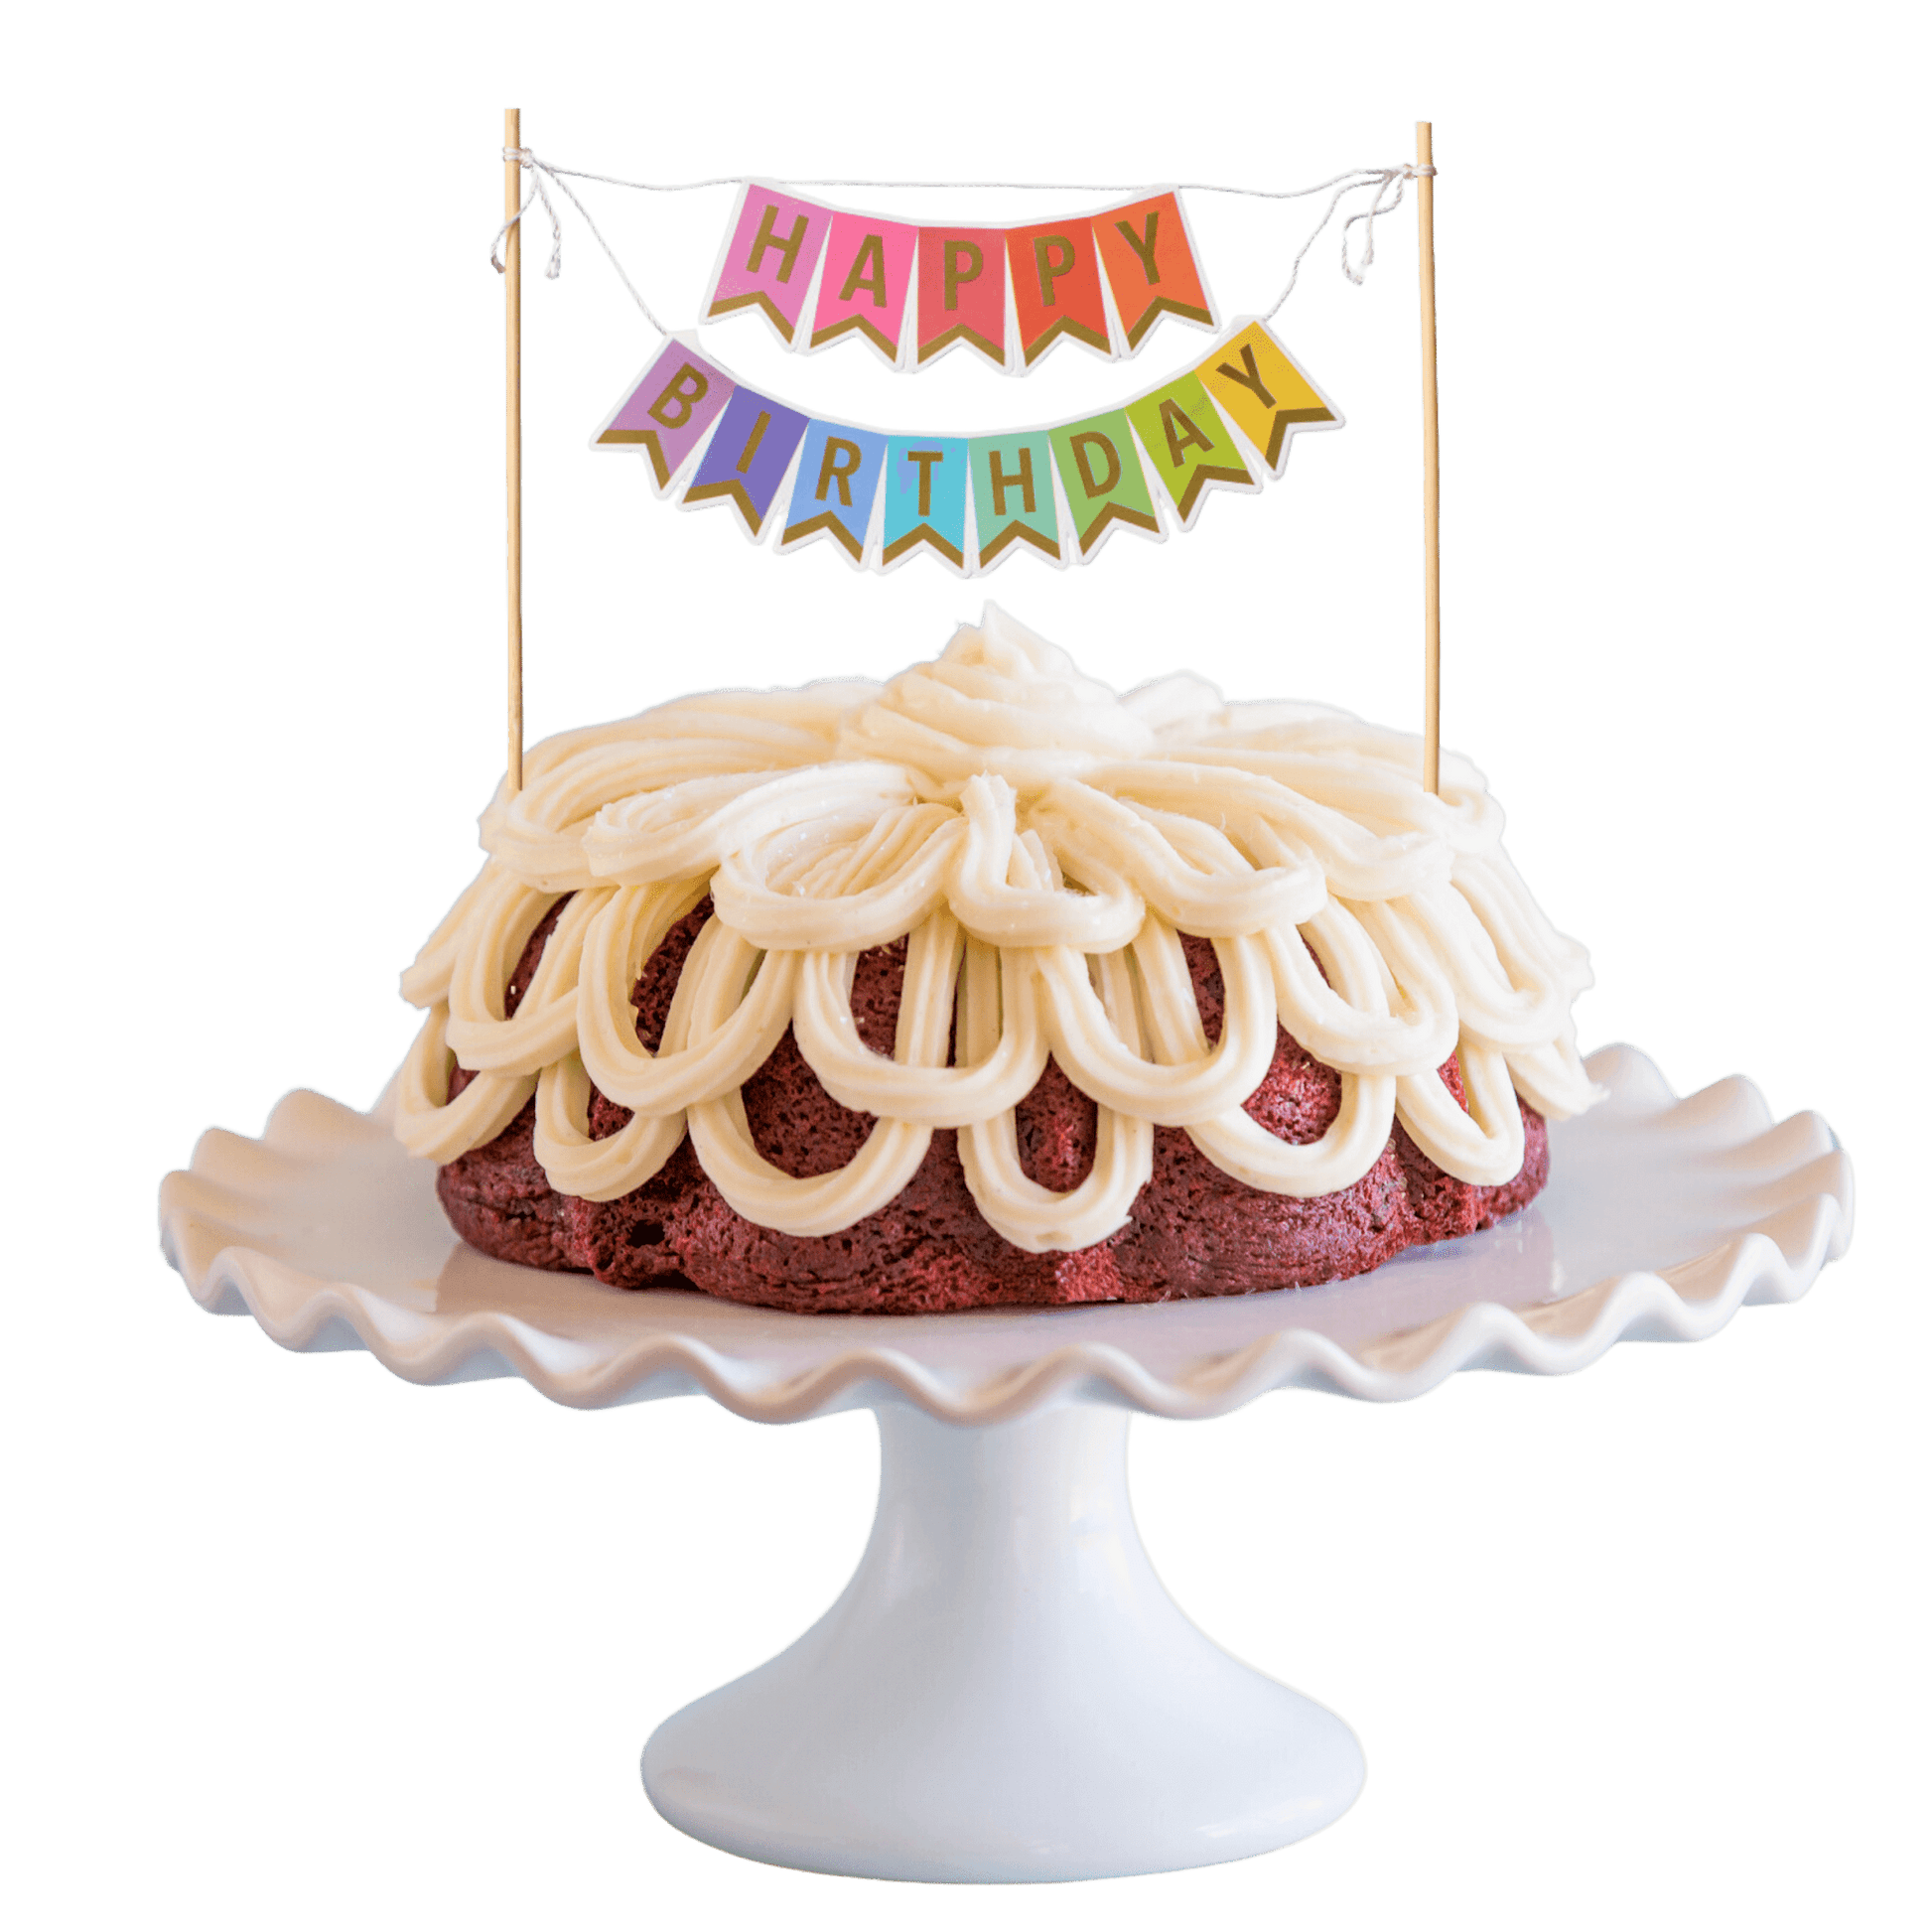 Red Velvet "HAPPY BIRTHDAY" Awning Banner Bundt Cake - Bundt Cakes